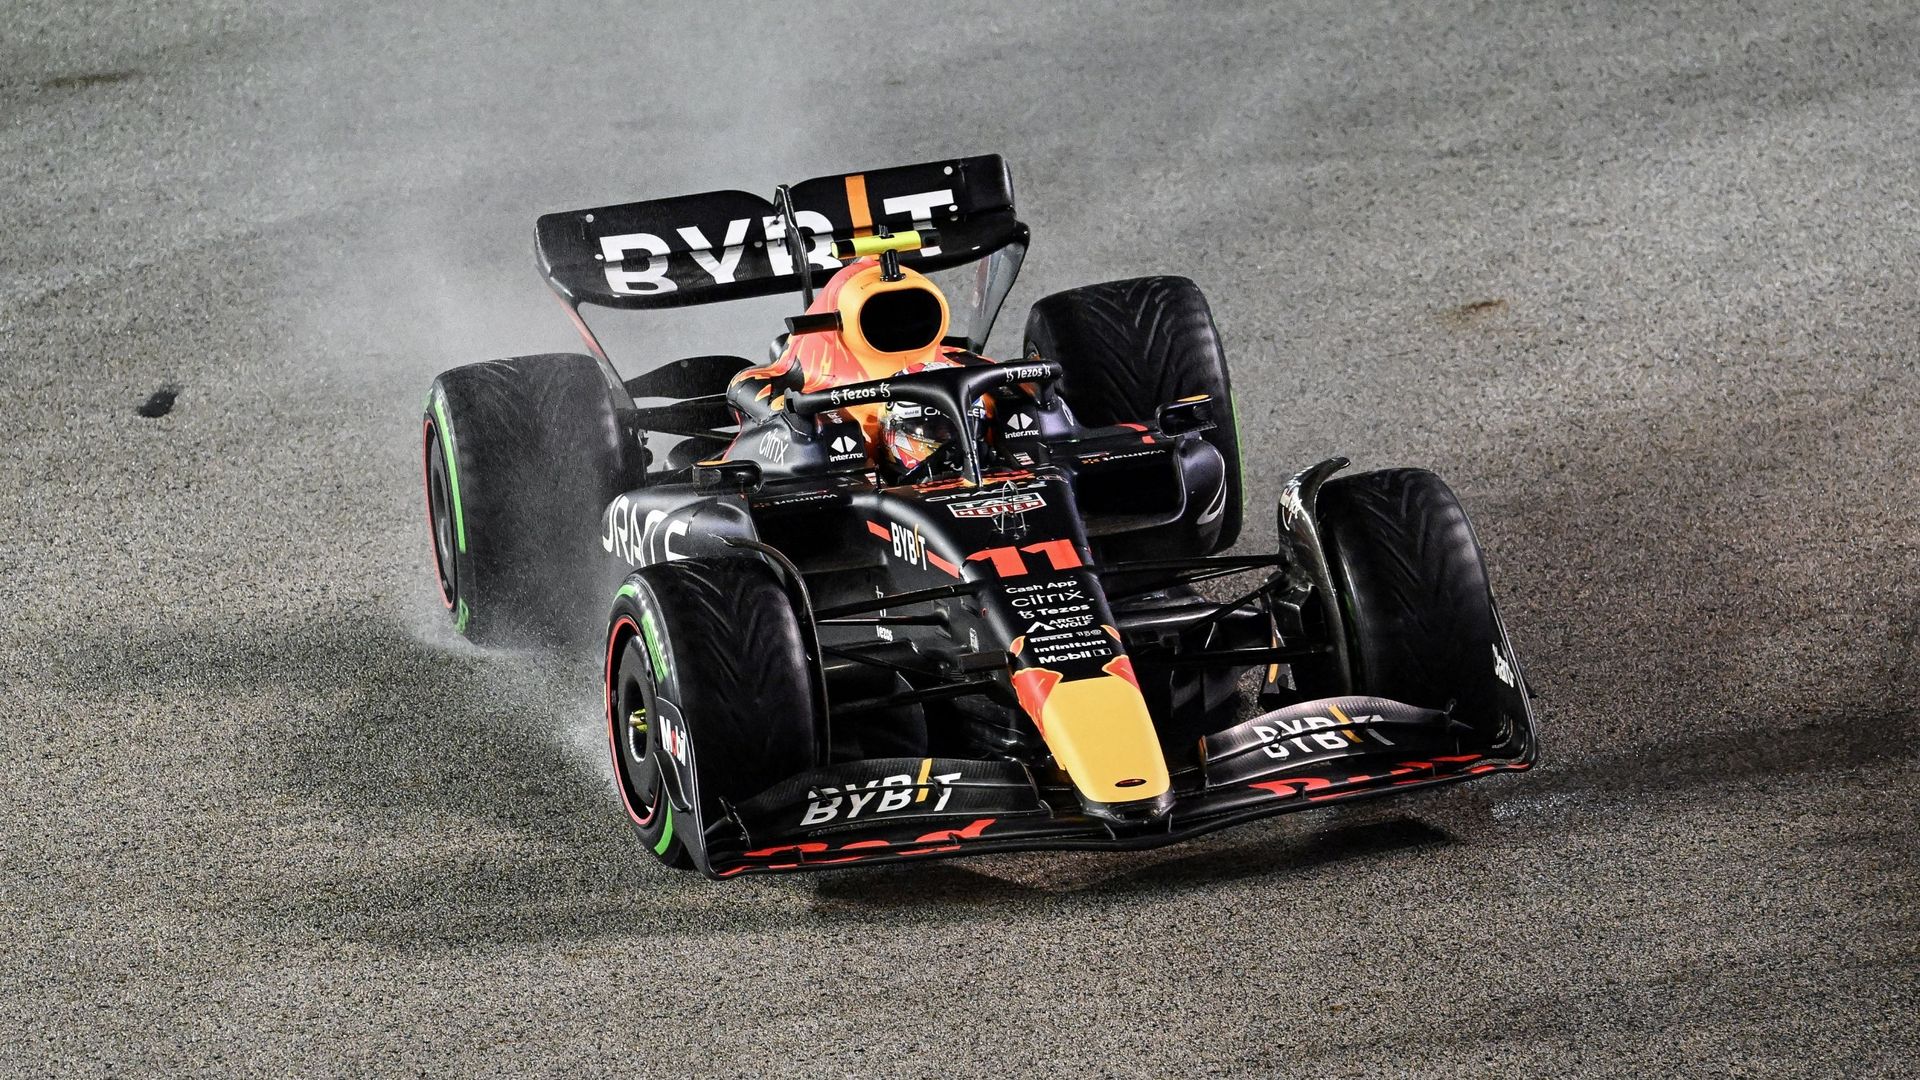 F1 Singapur: Pérez gana una carrera marcada por muchos retiros, Verstappen aún no espera su gloria suprema